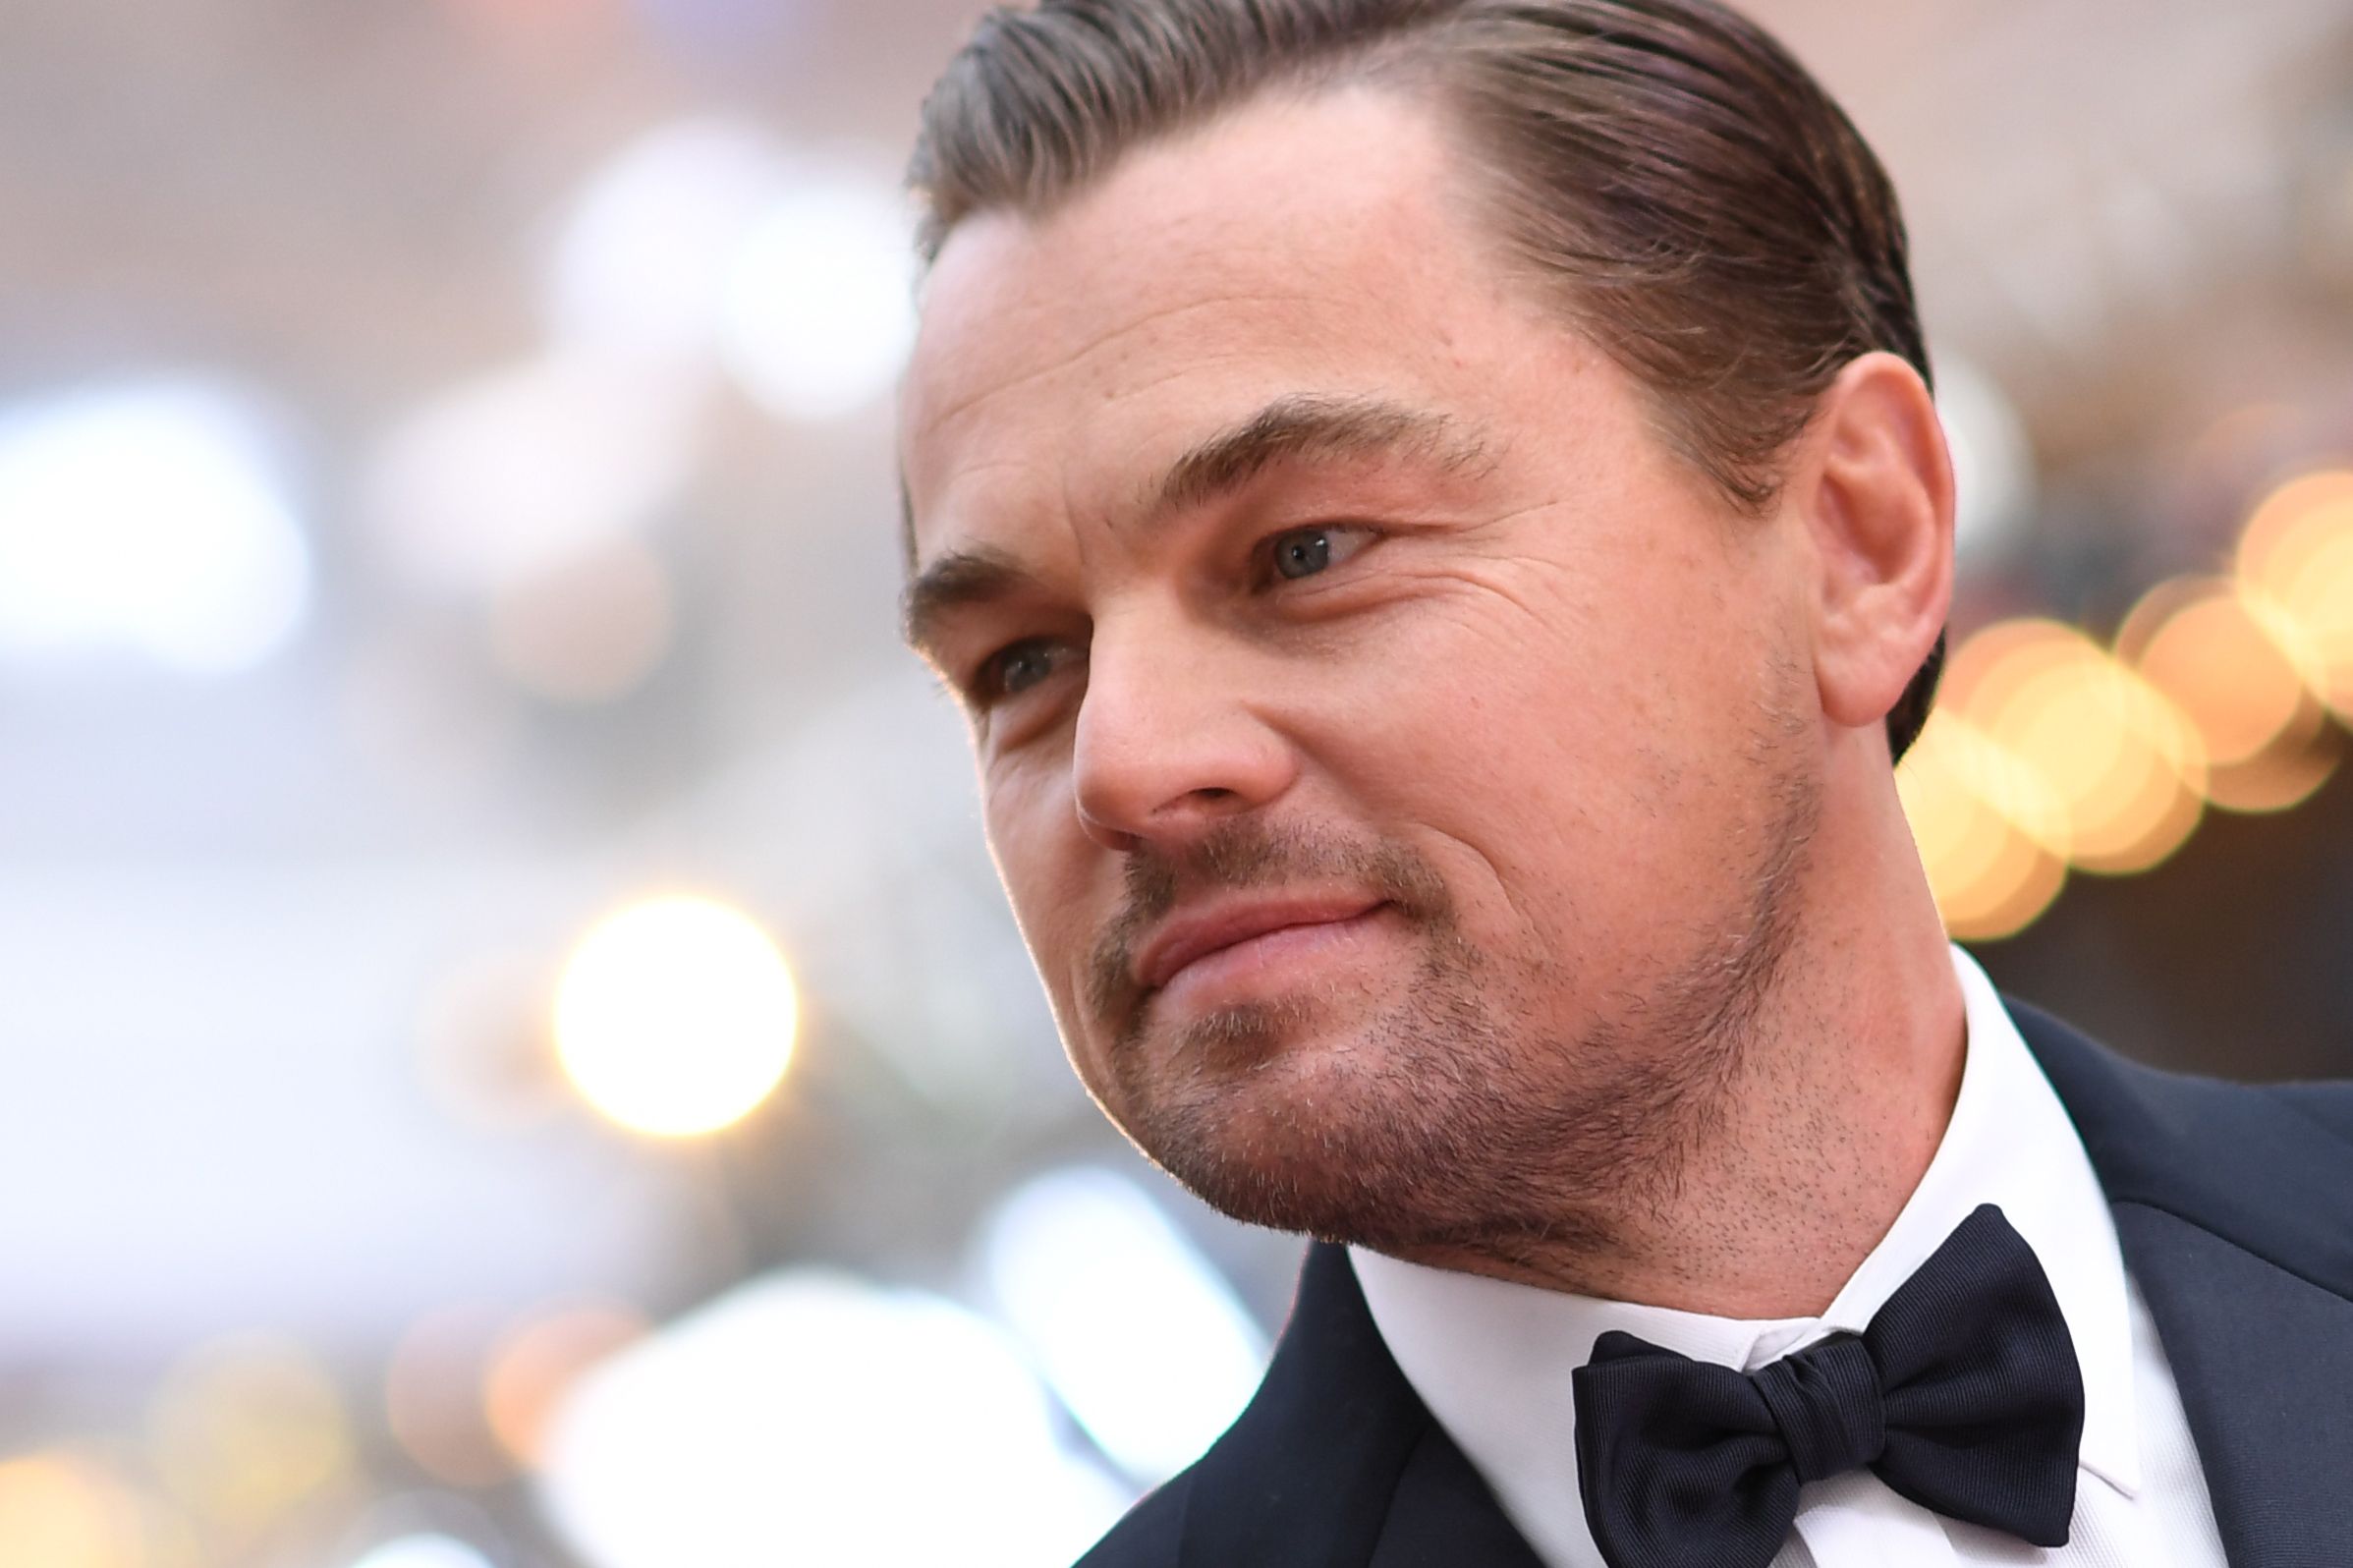 El actor estadounidense Leonardo DiCaprio ha protagonizado muchas cintas a lo largo de su carrera artística. (Foto Prensa Libre: AFP)